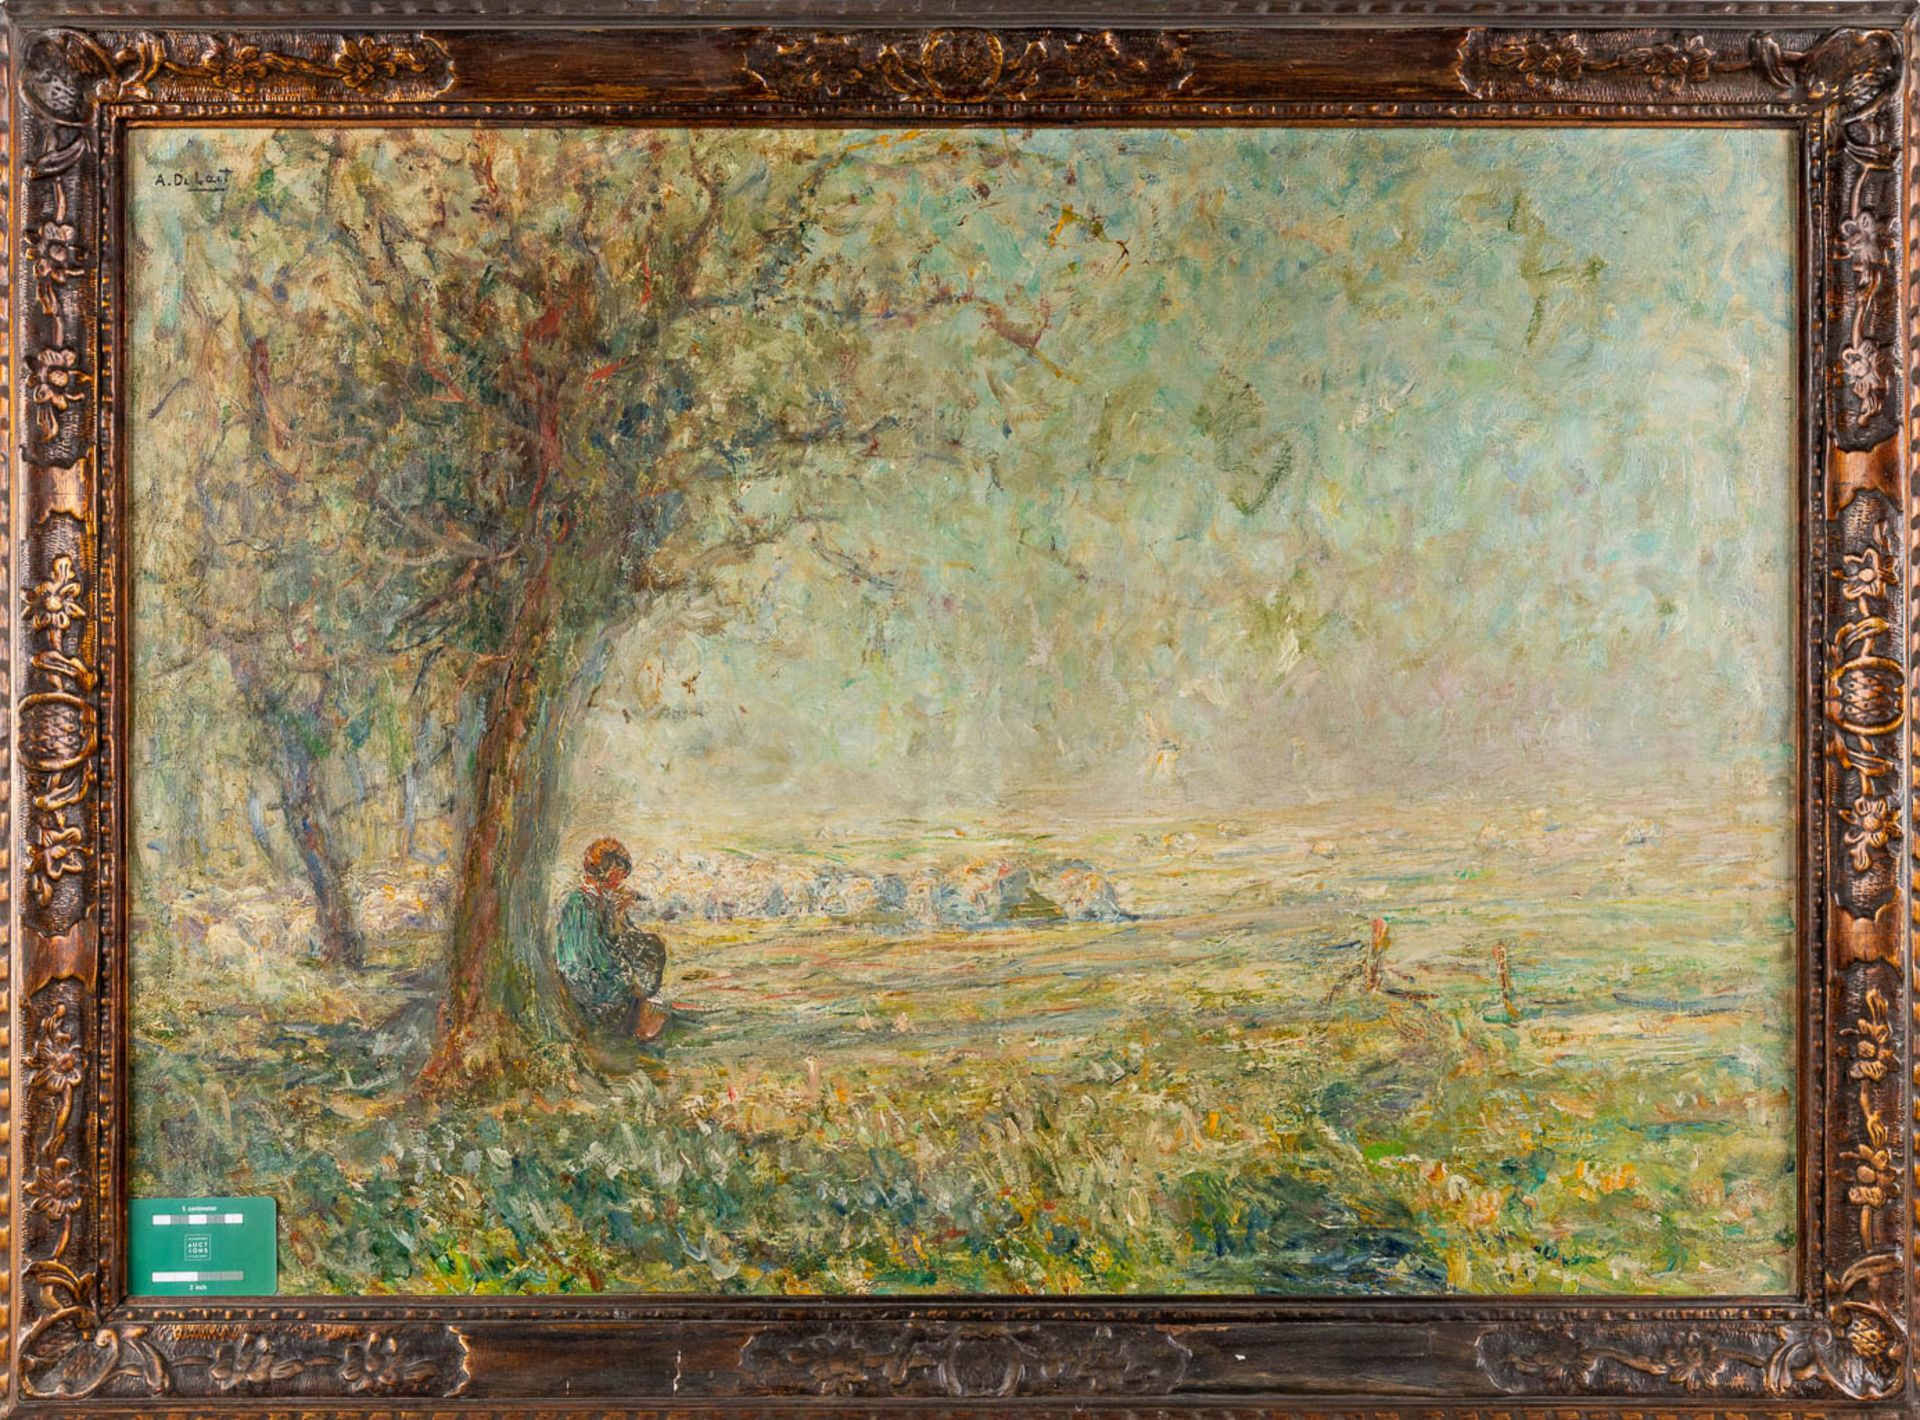 Aloïs DE LAET (1866-1949) 'Landscape' oil on canvas. (W:96 x H:67 cm) - Image 2 of 6